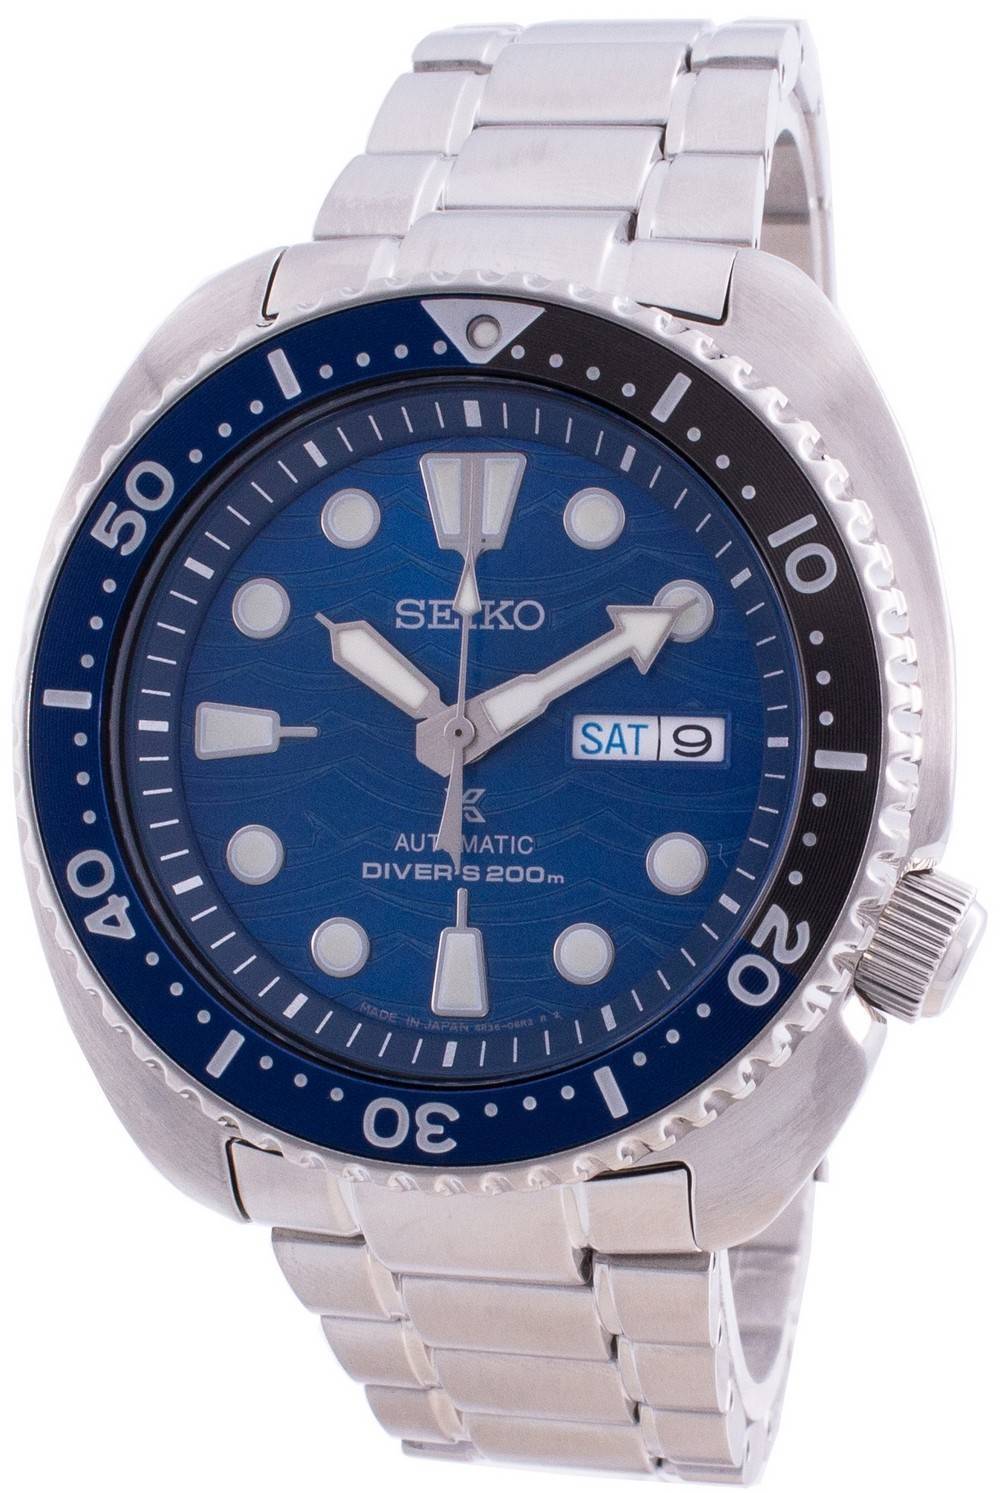 Đồng hồ nam Seiko Prospex Turtle Save The Ocean Automatic Diver's SRPD21  SRPD21J1 SRPD21J 200M vi